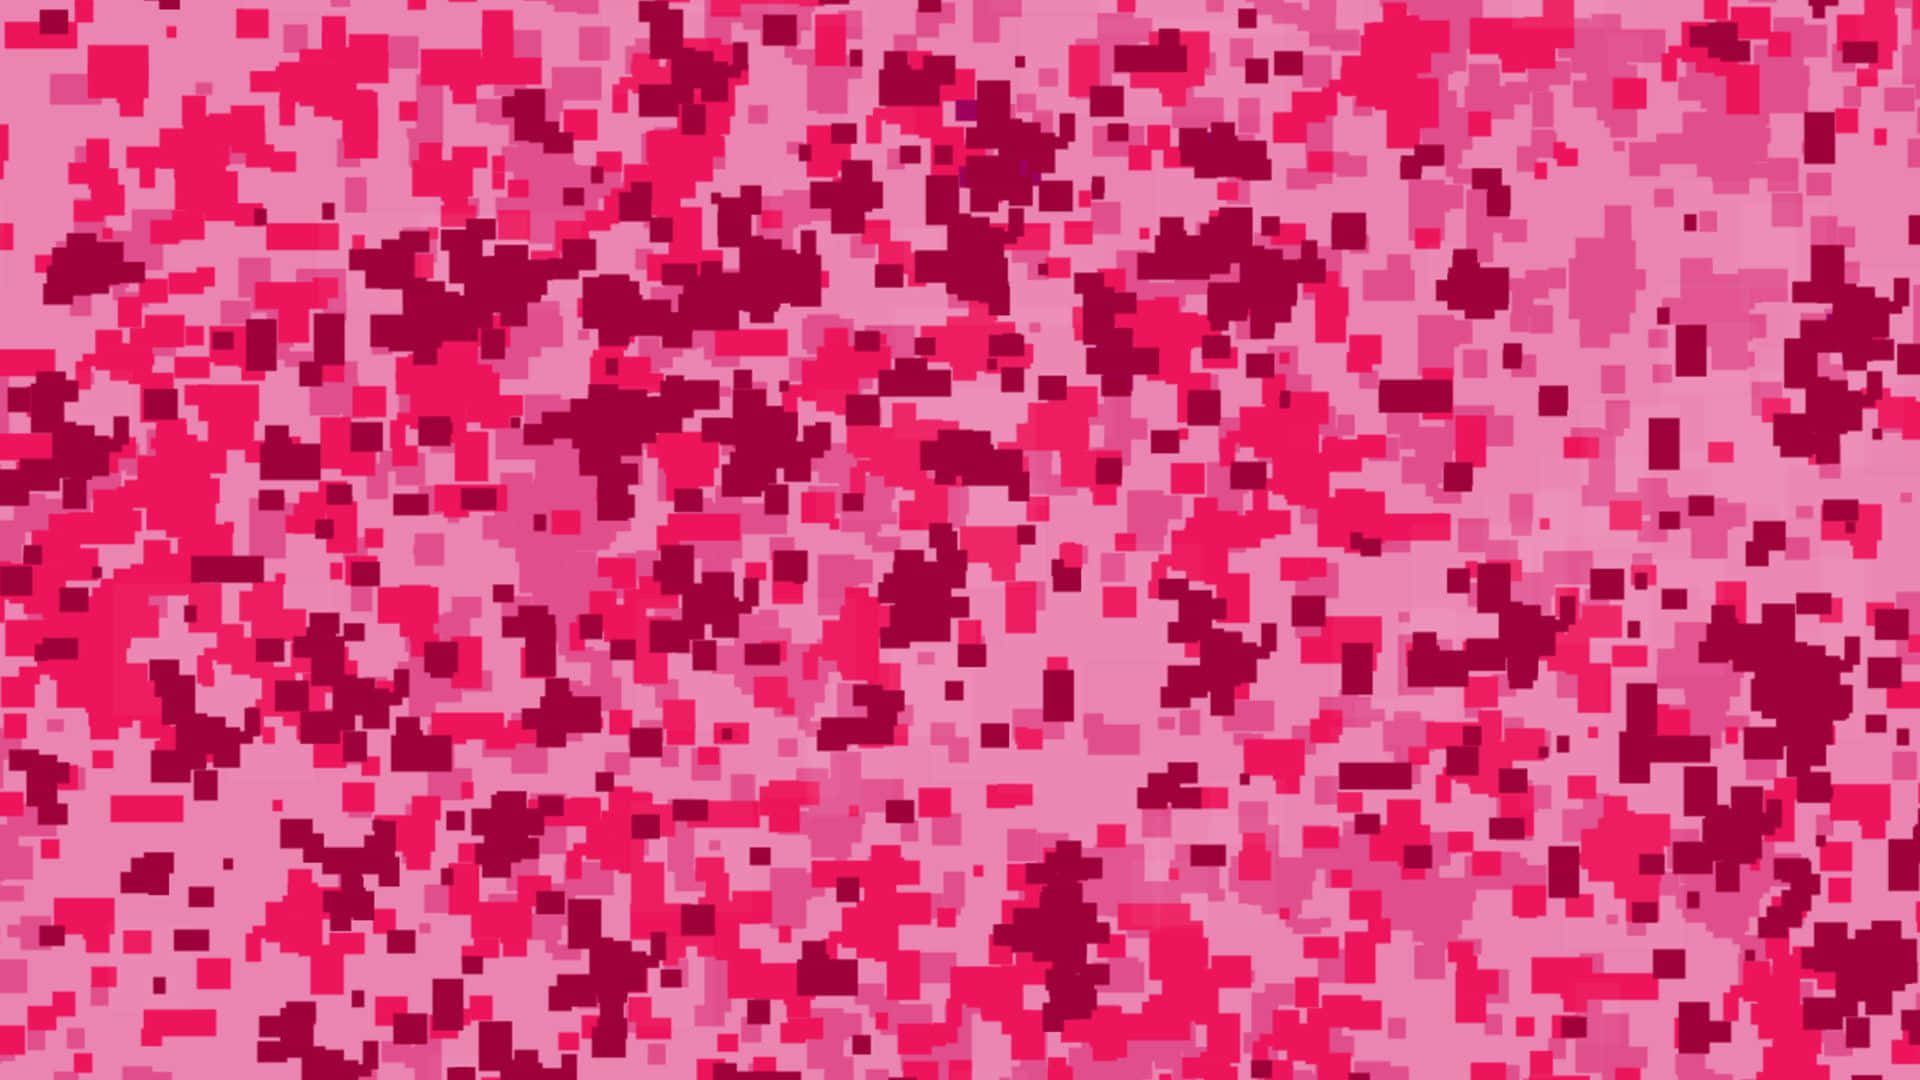 Utforskadin Moderna Stil Med Rosa Kamouflage-mönstrad Bakgrundsbild På Din Dator Eller Mobiltelefon. Wallpaper